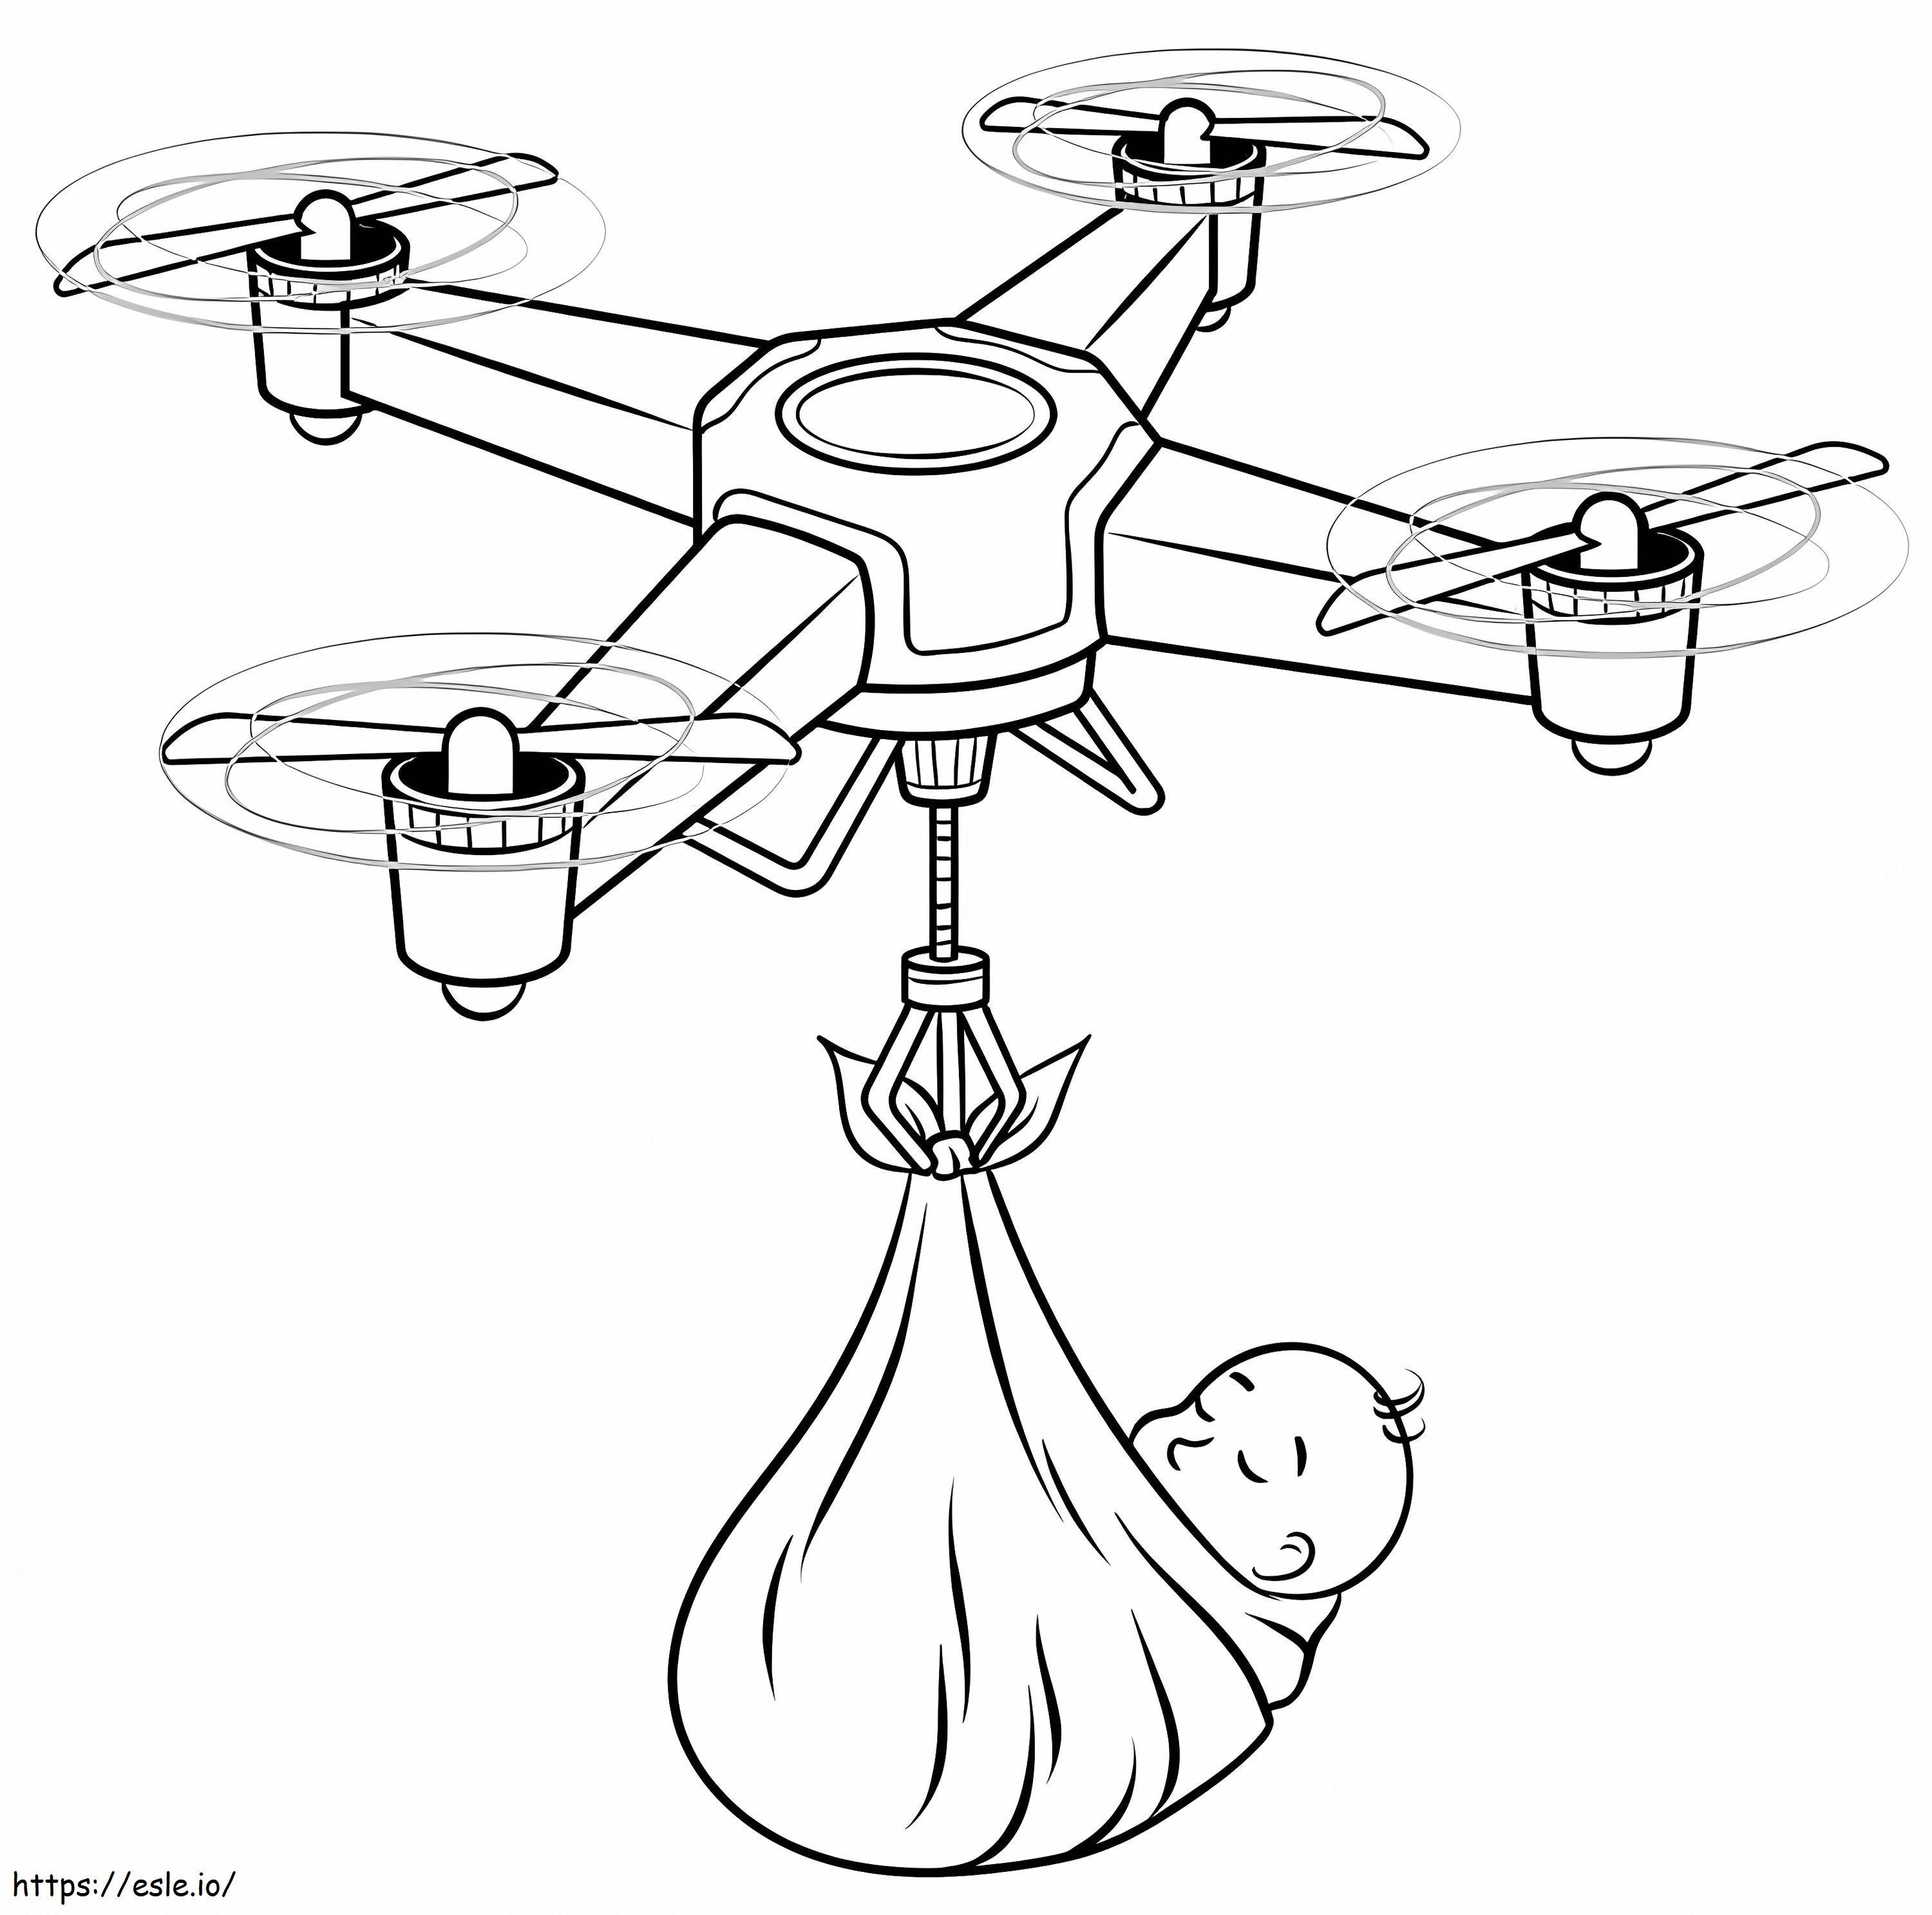 Coloriage drone et bébé à imprimer dessin